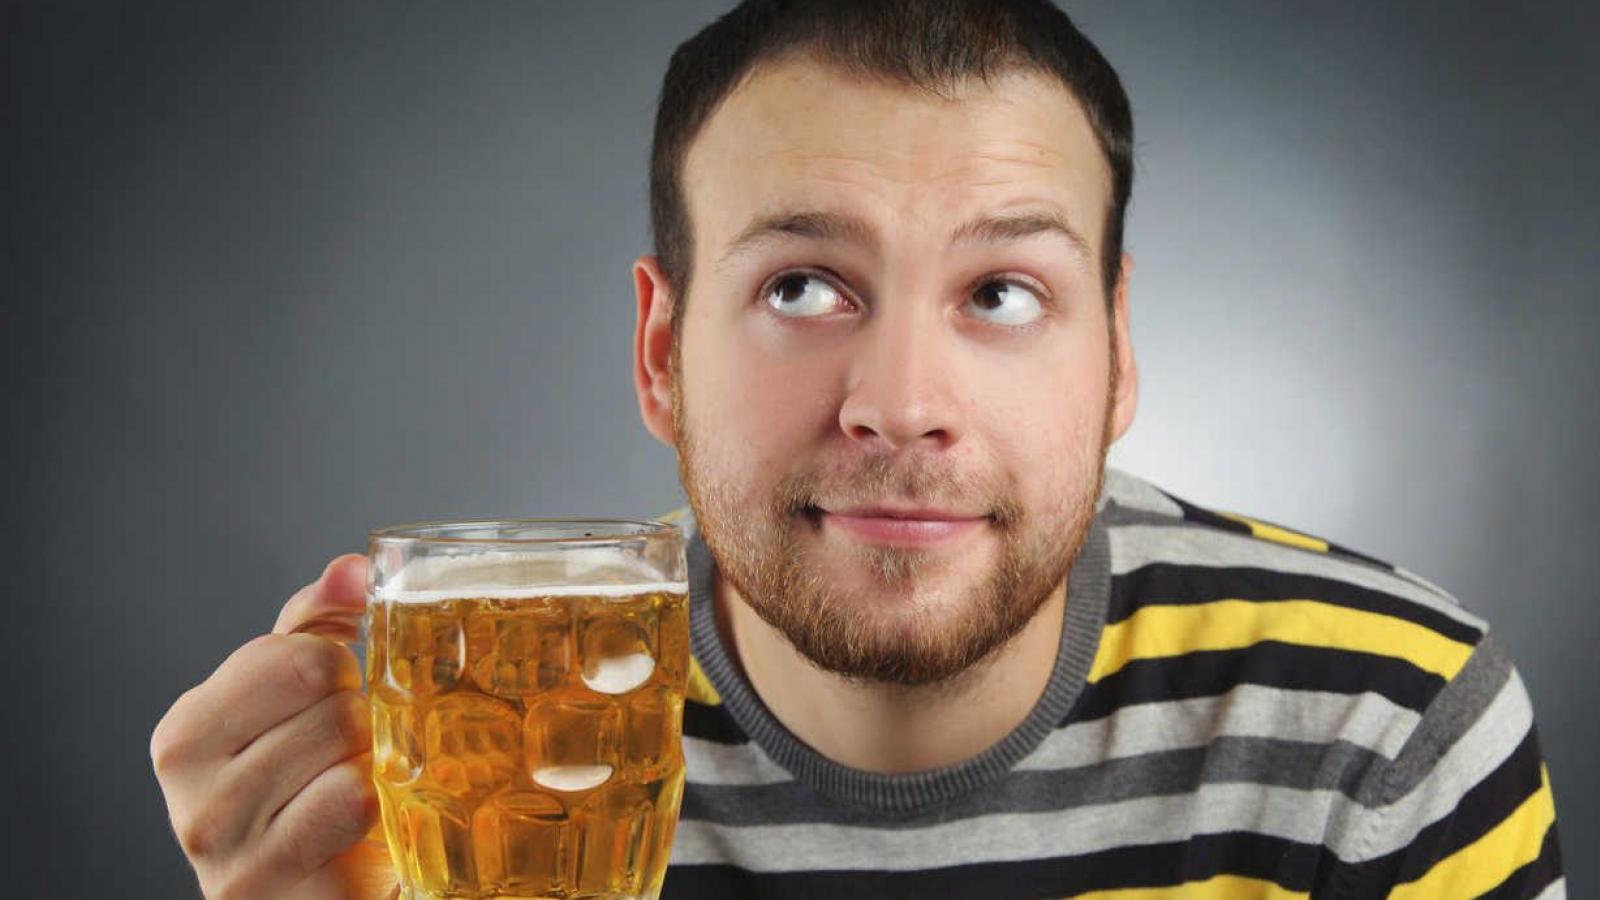 4 факта о пользе одной бутылки пива